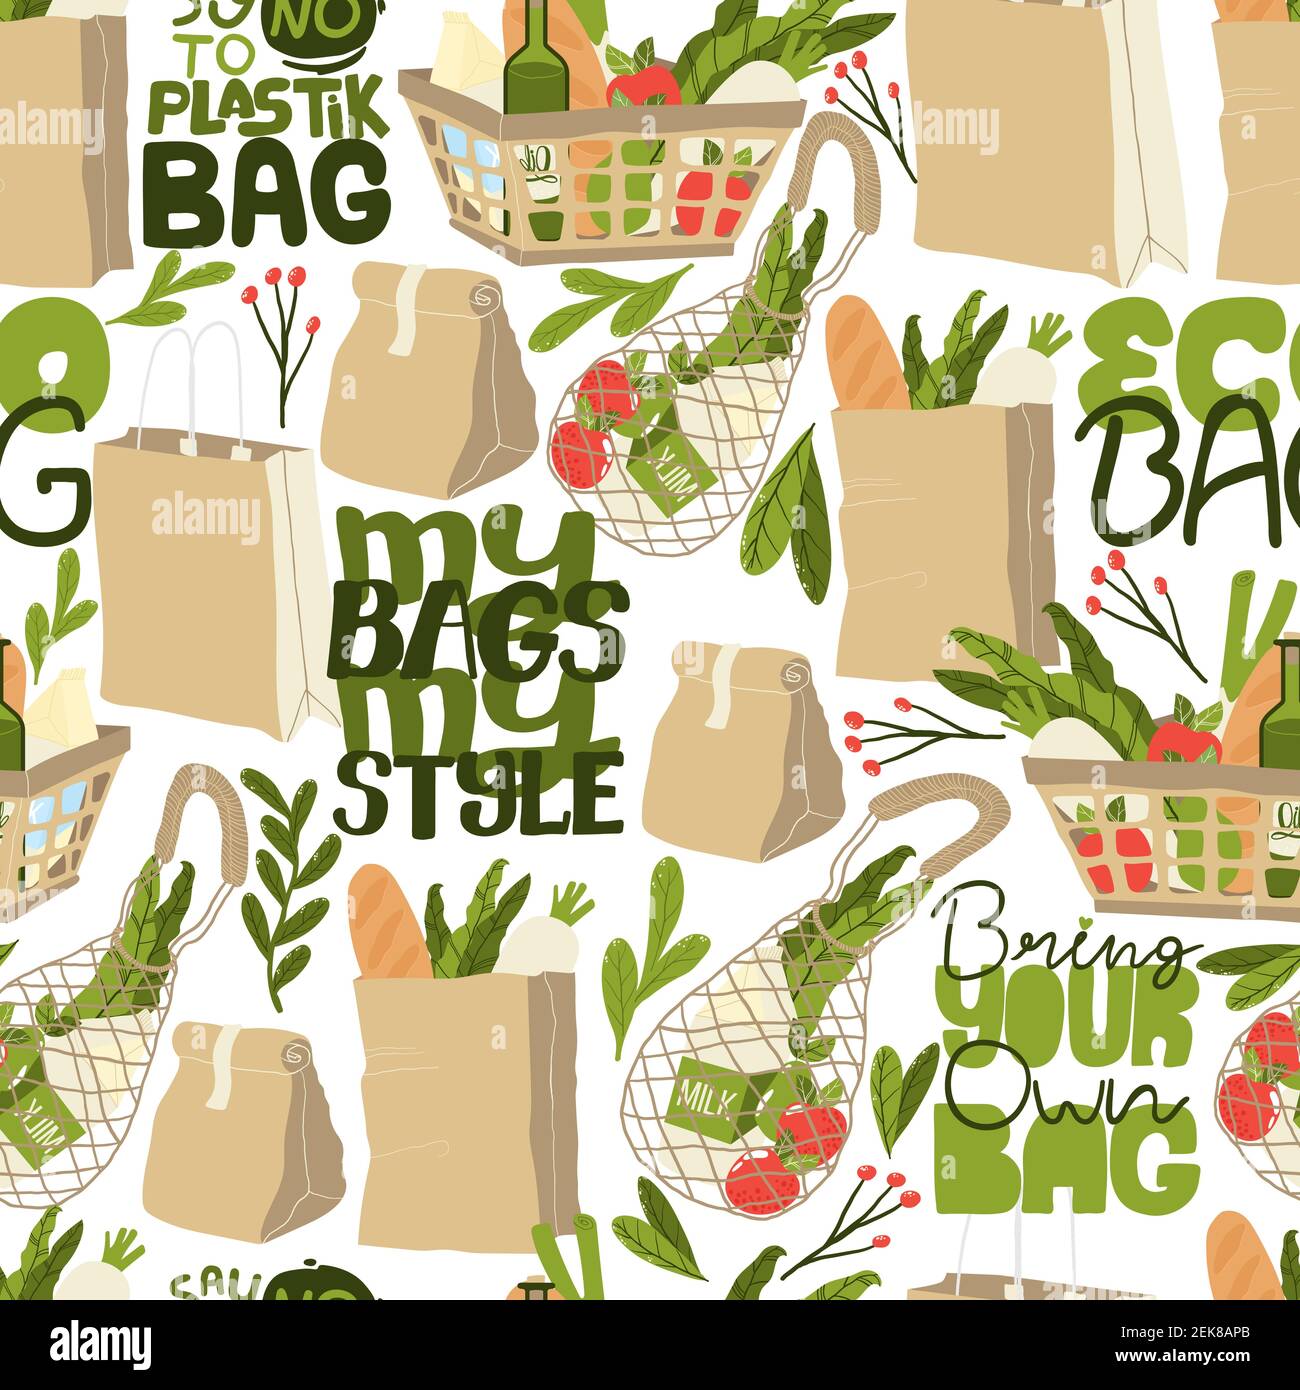 newspaper bags, We have here a slogan: Plastic Free Nilgiri…